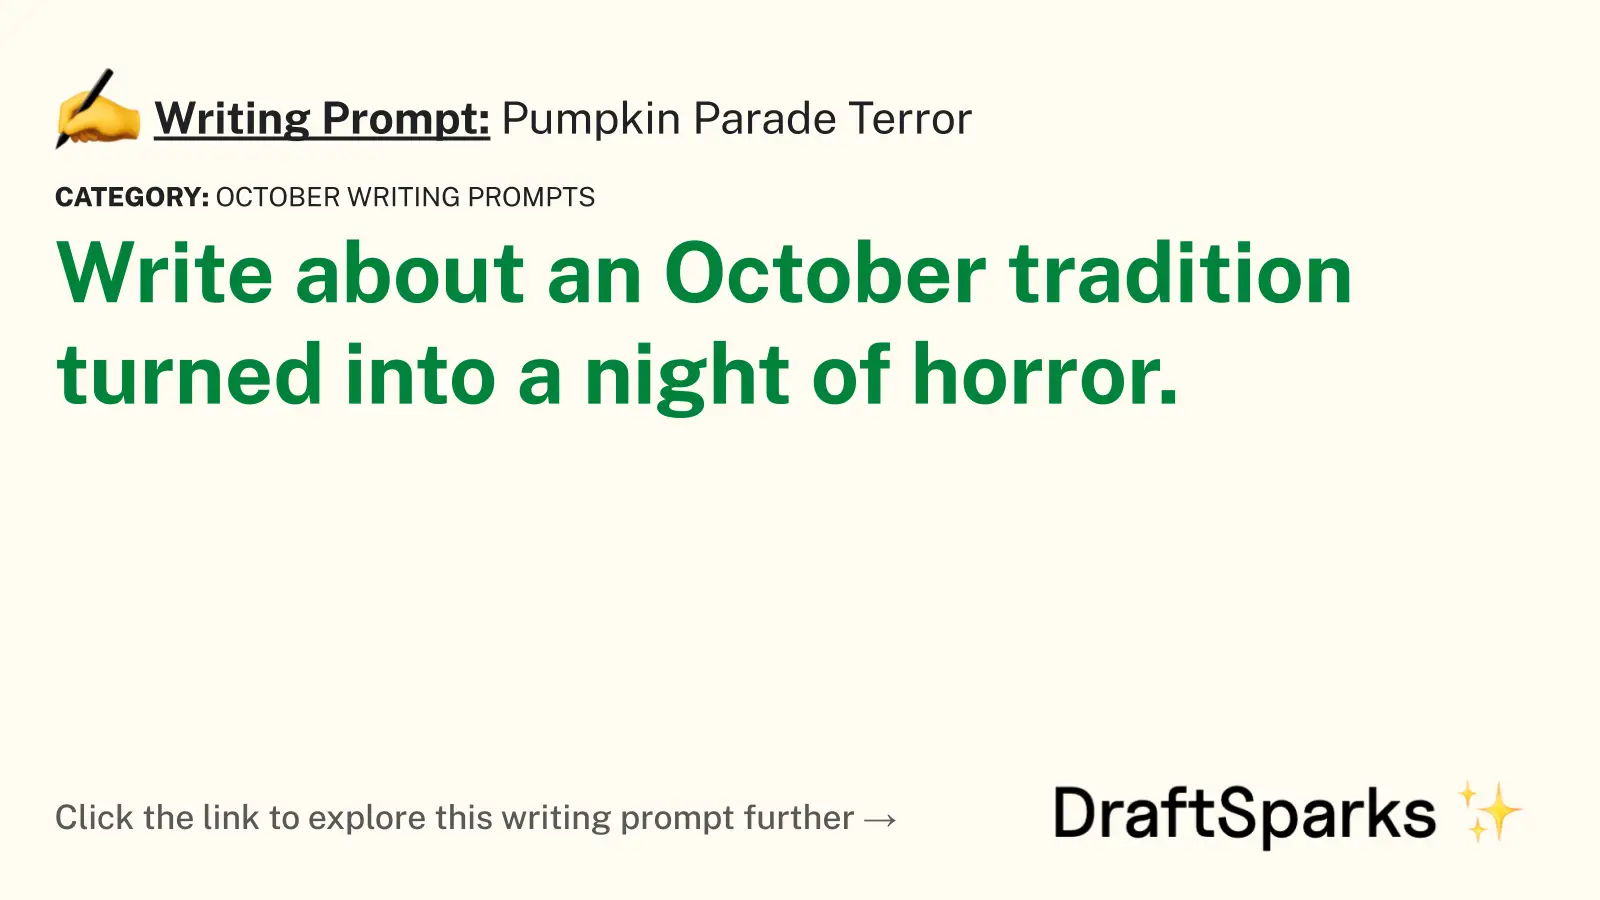 Pumpkin Parade Terror